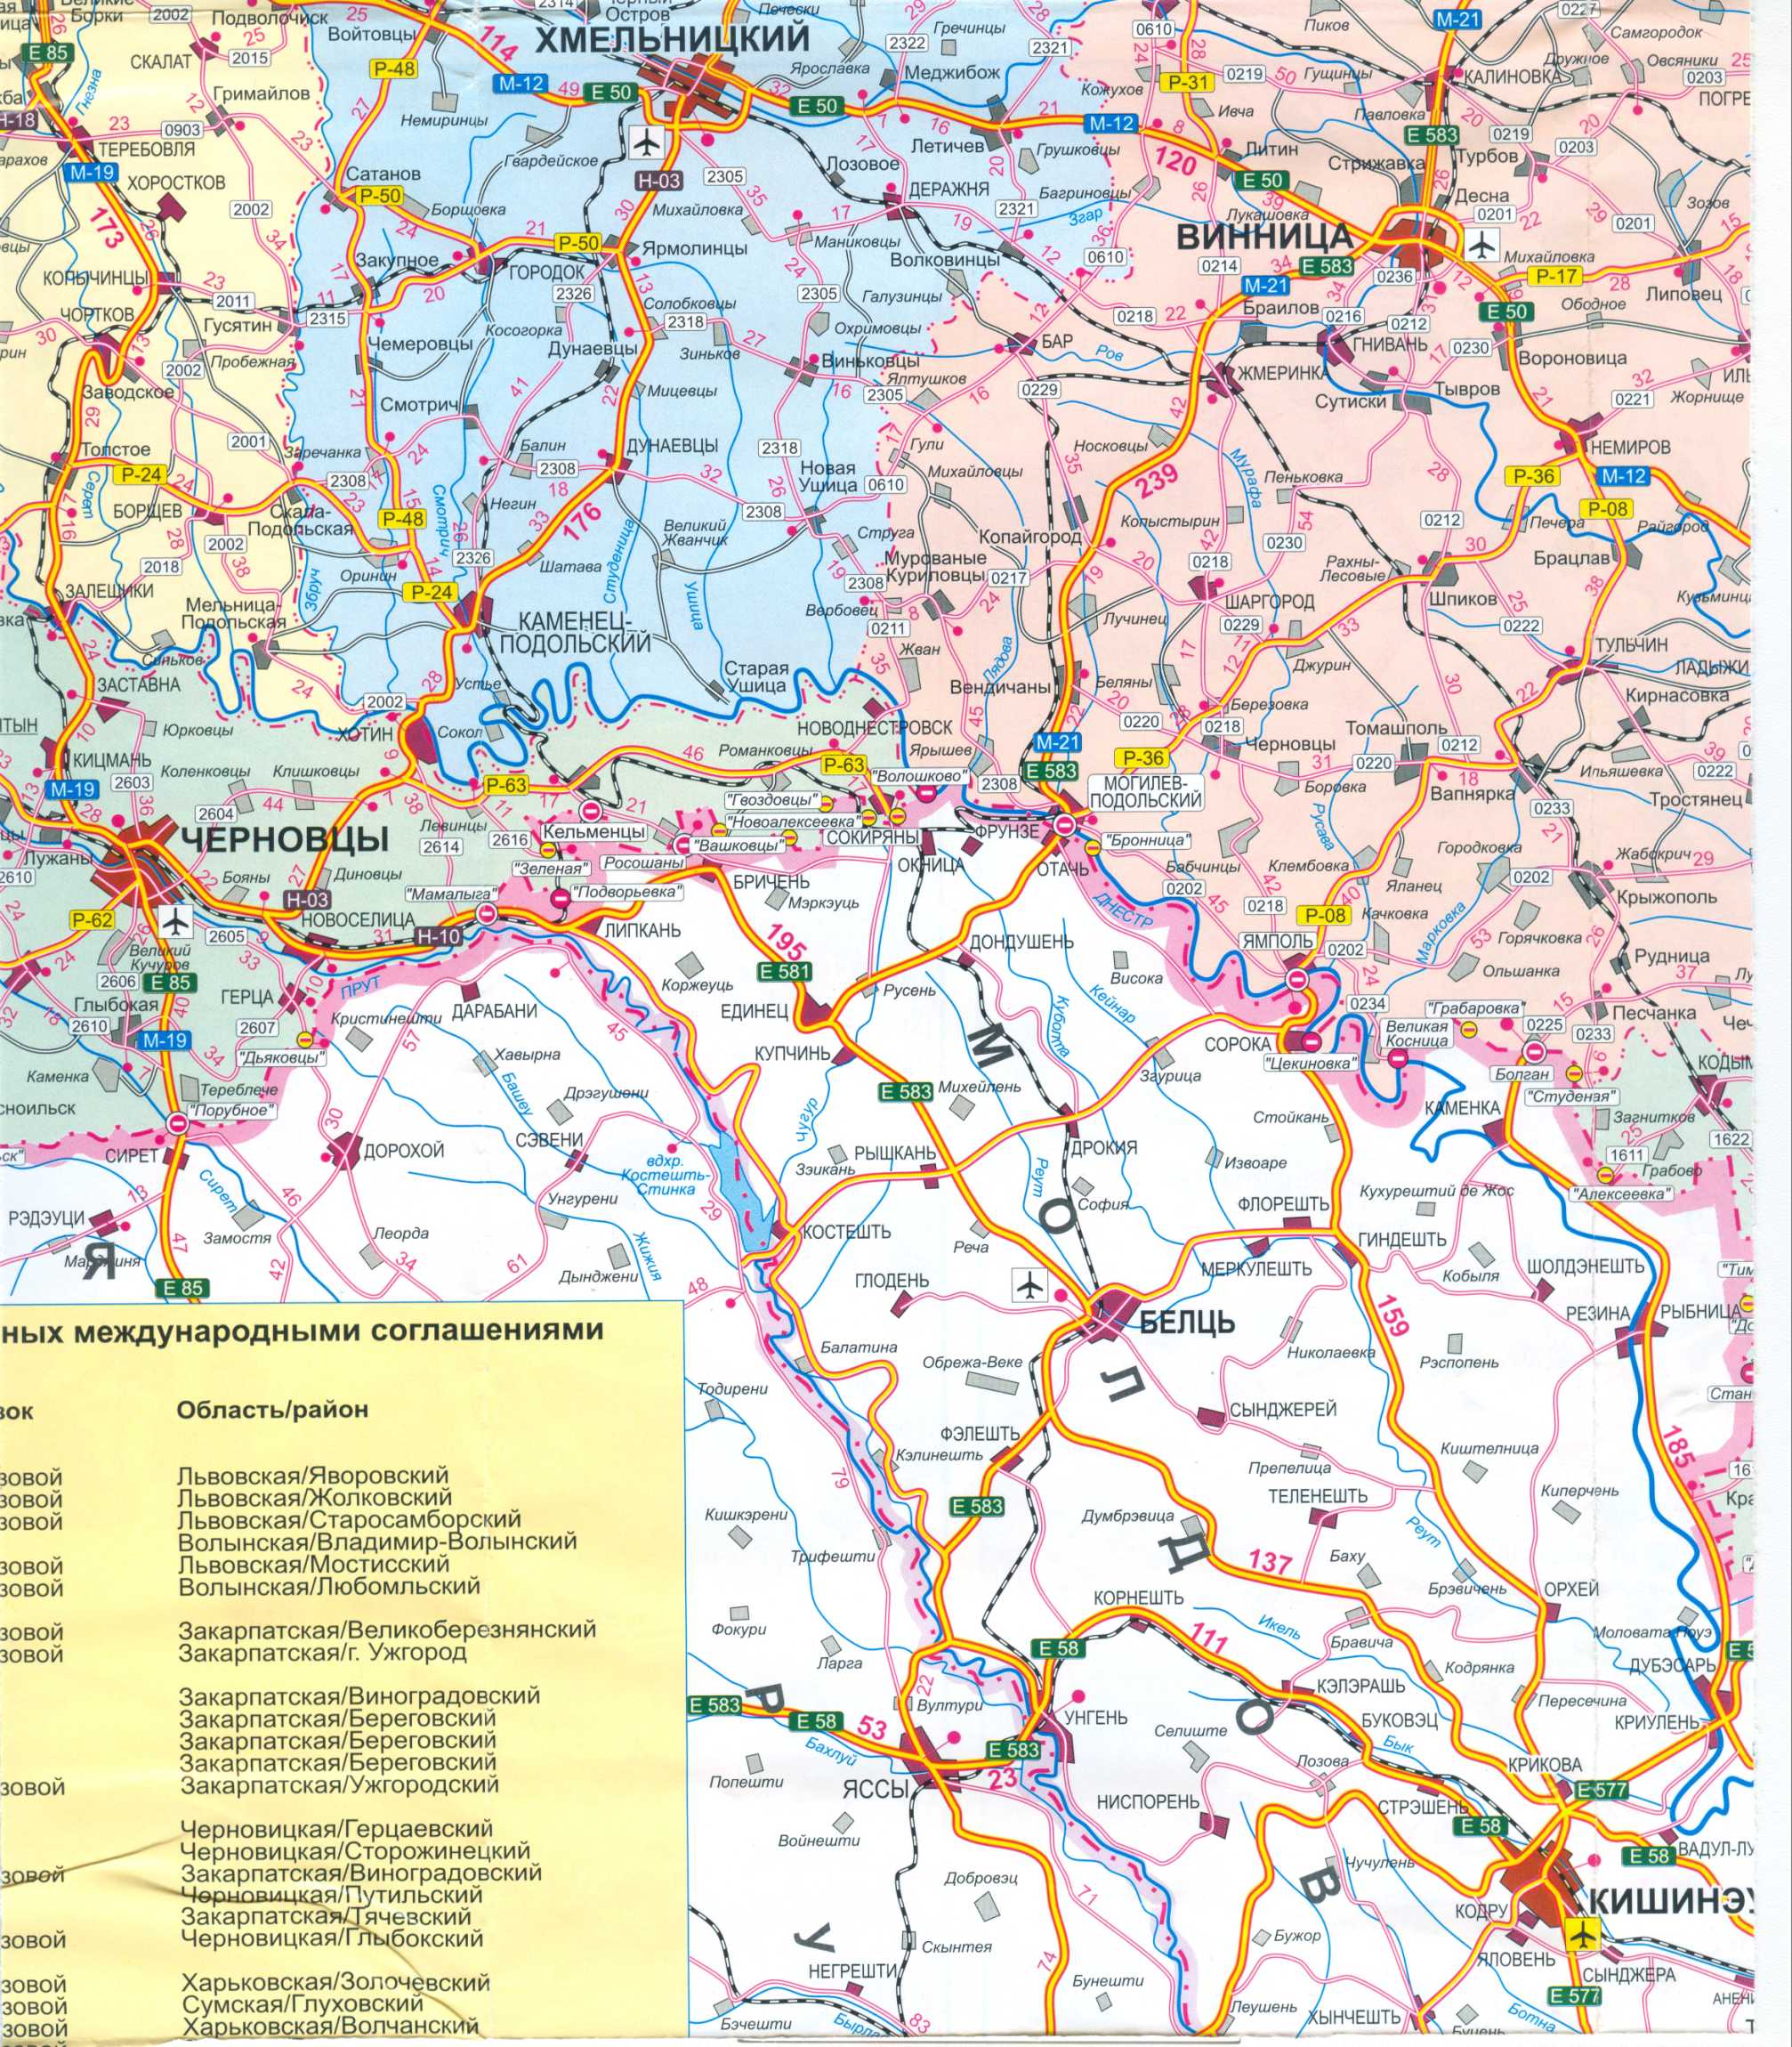 Карта Украины бесплатно. Карта дорог Украины скачать бесплатно. Большая карта дорог Украины бесплатно, B1